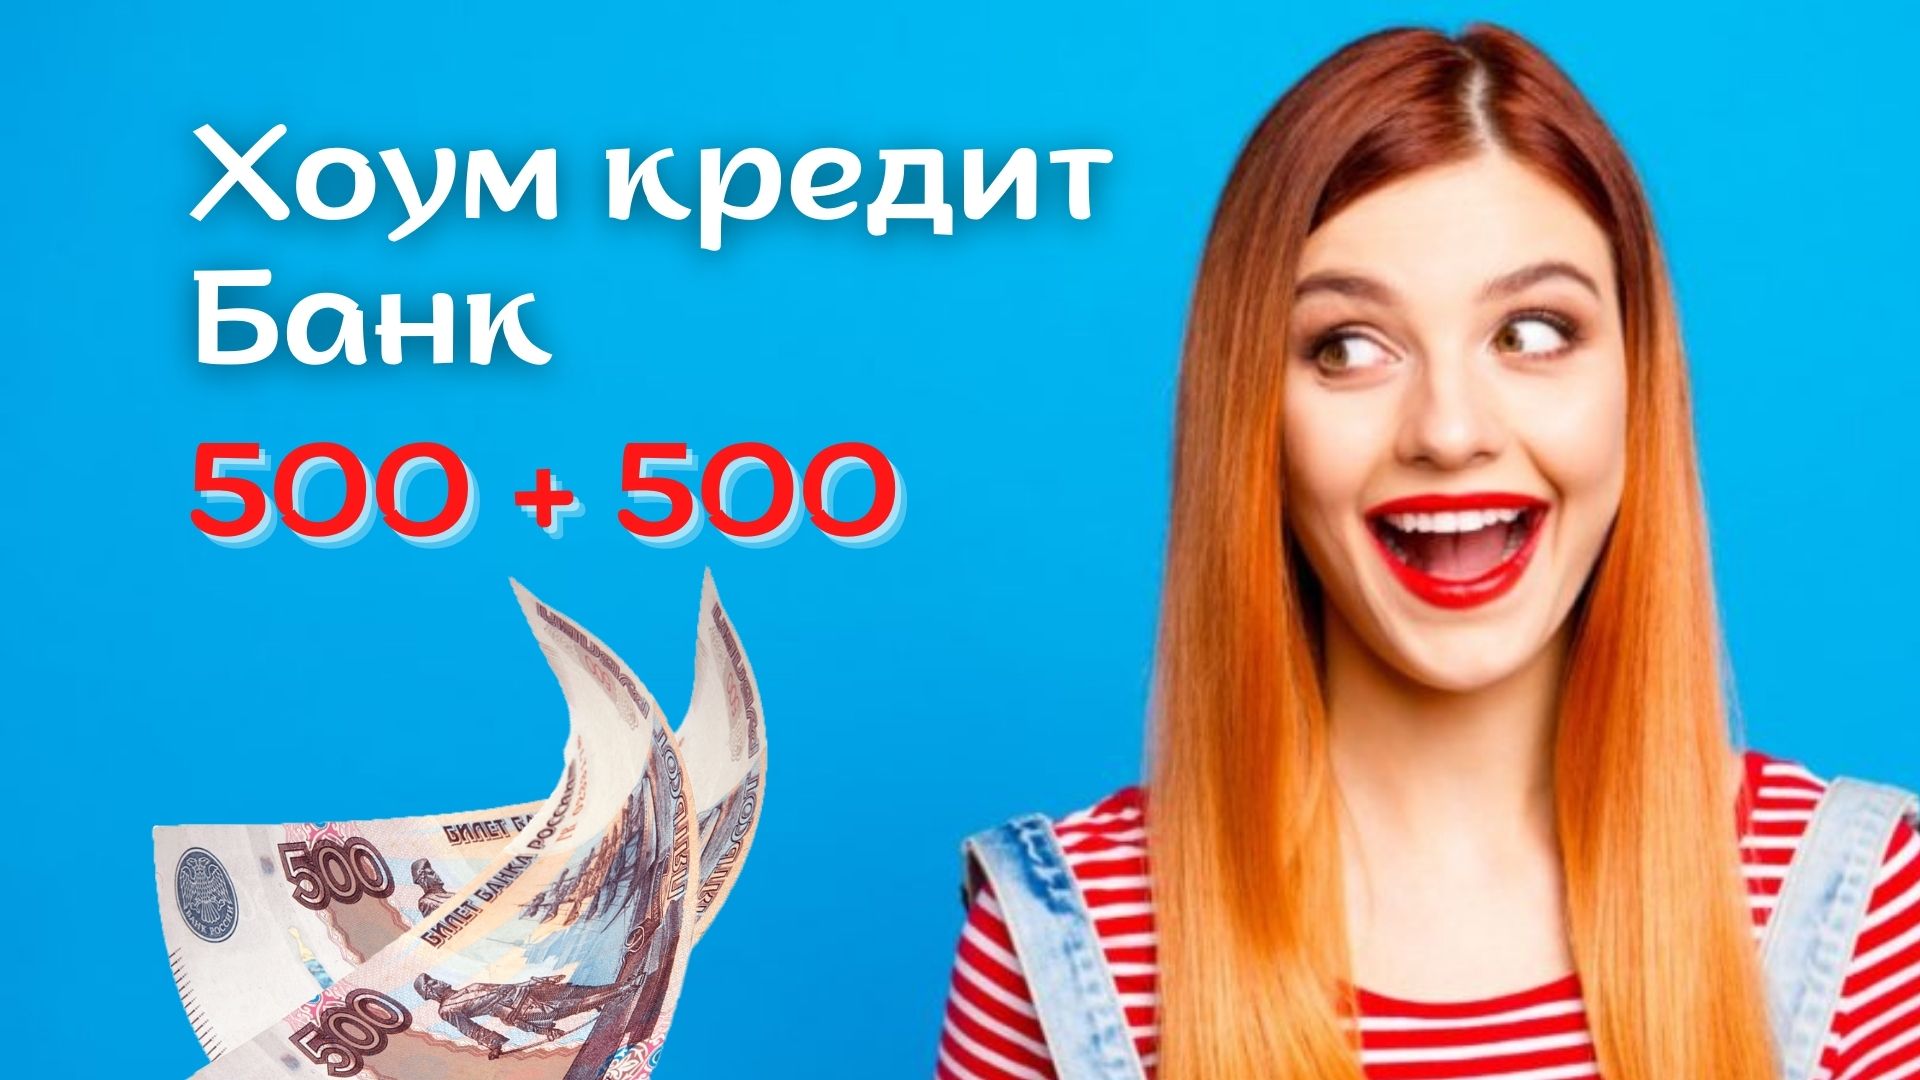 Хоум банк платит по акции Приведи друга оформить карту по 500 рублей